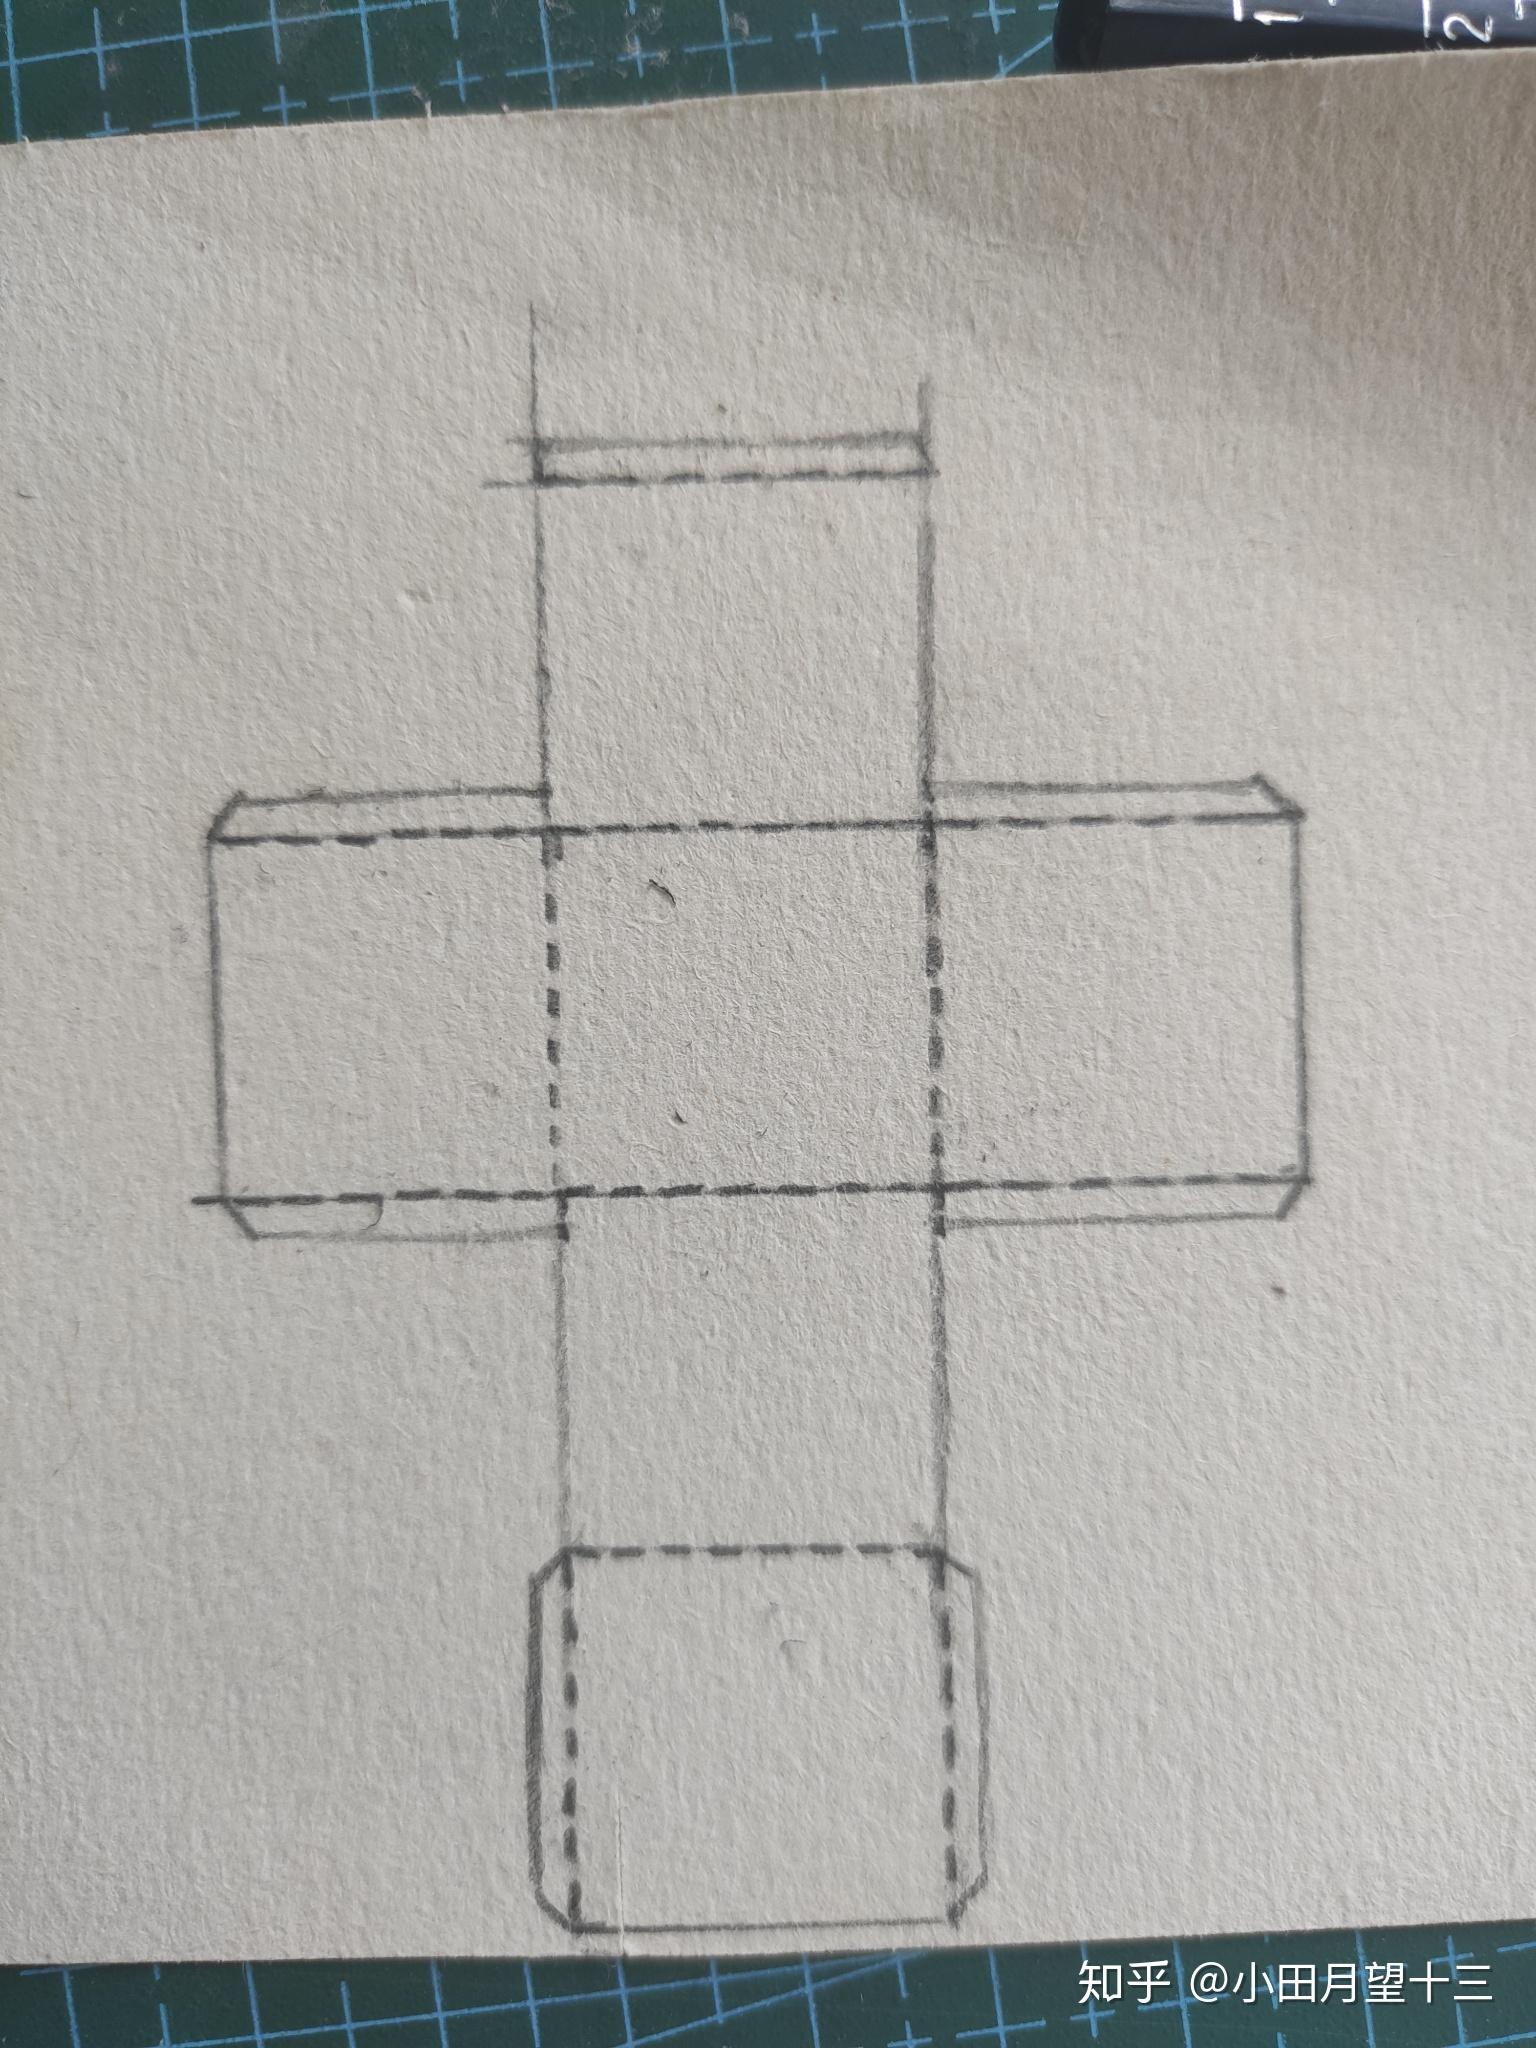 如何将a4纸制作成正方体?